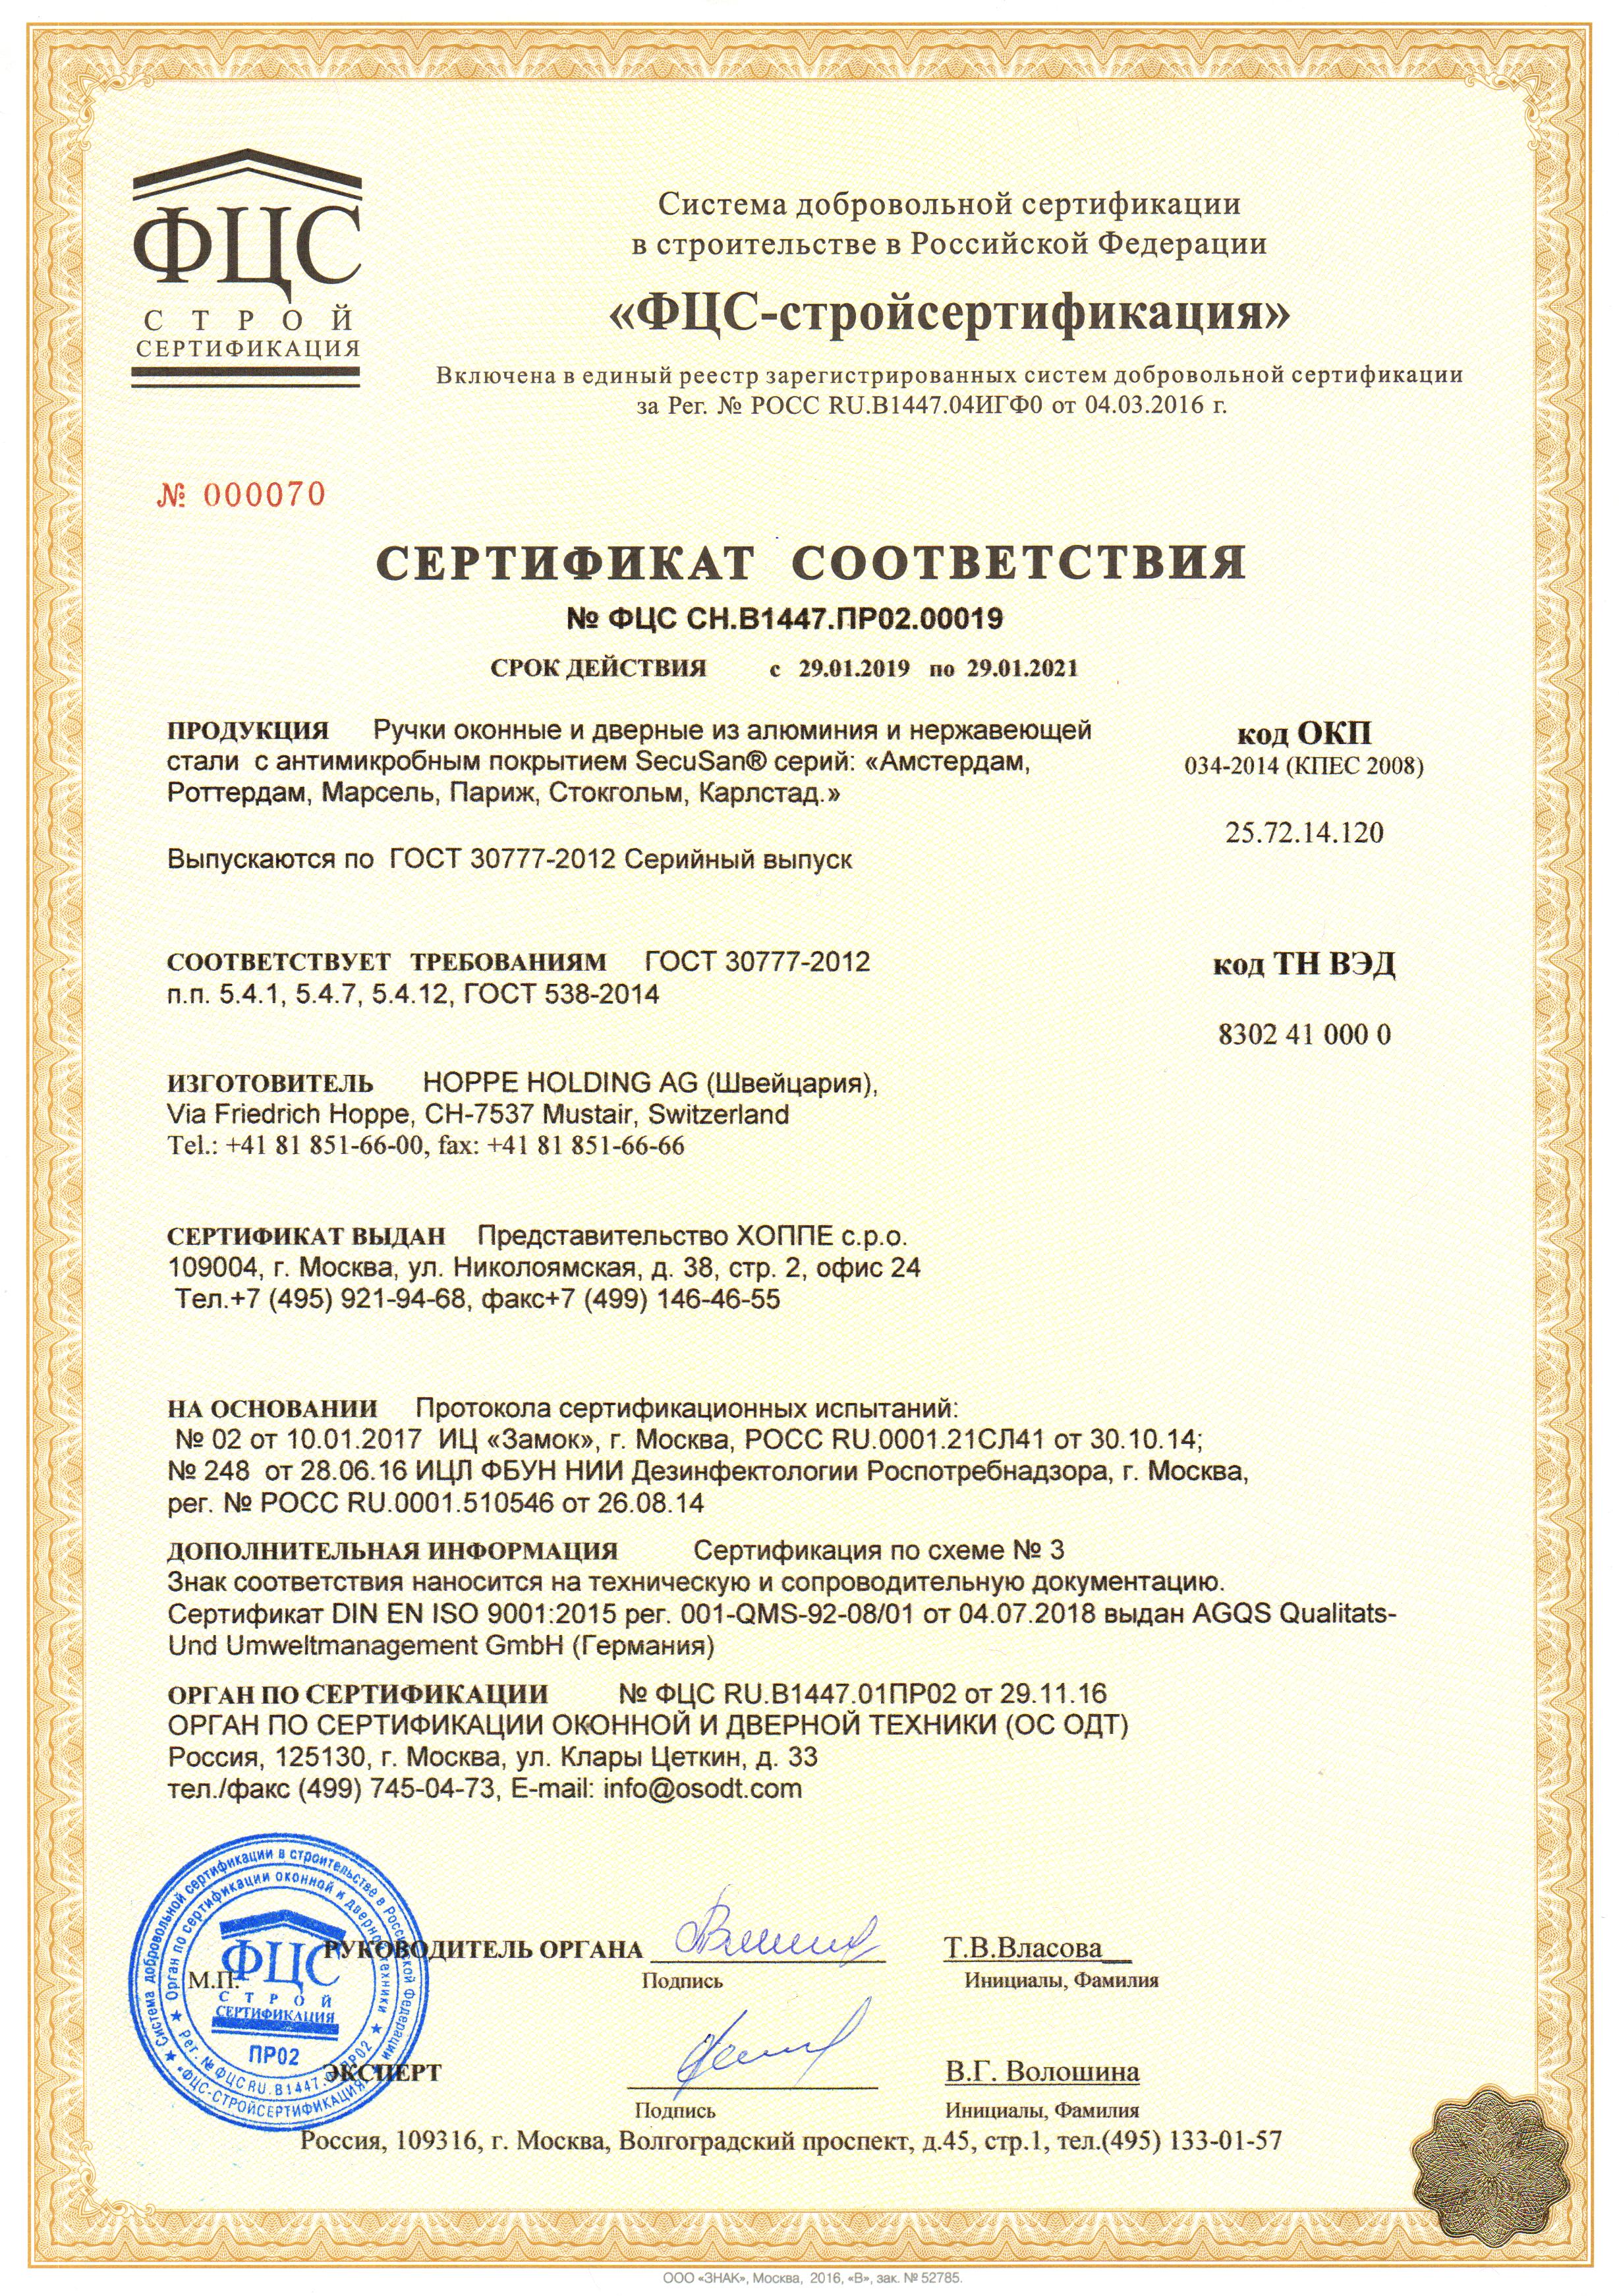 Сертификат соответствия на ручки оконные и дверные с антибактериальным покрытием SecuScan т.м. Hoppe.jpg